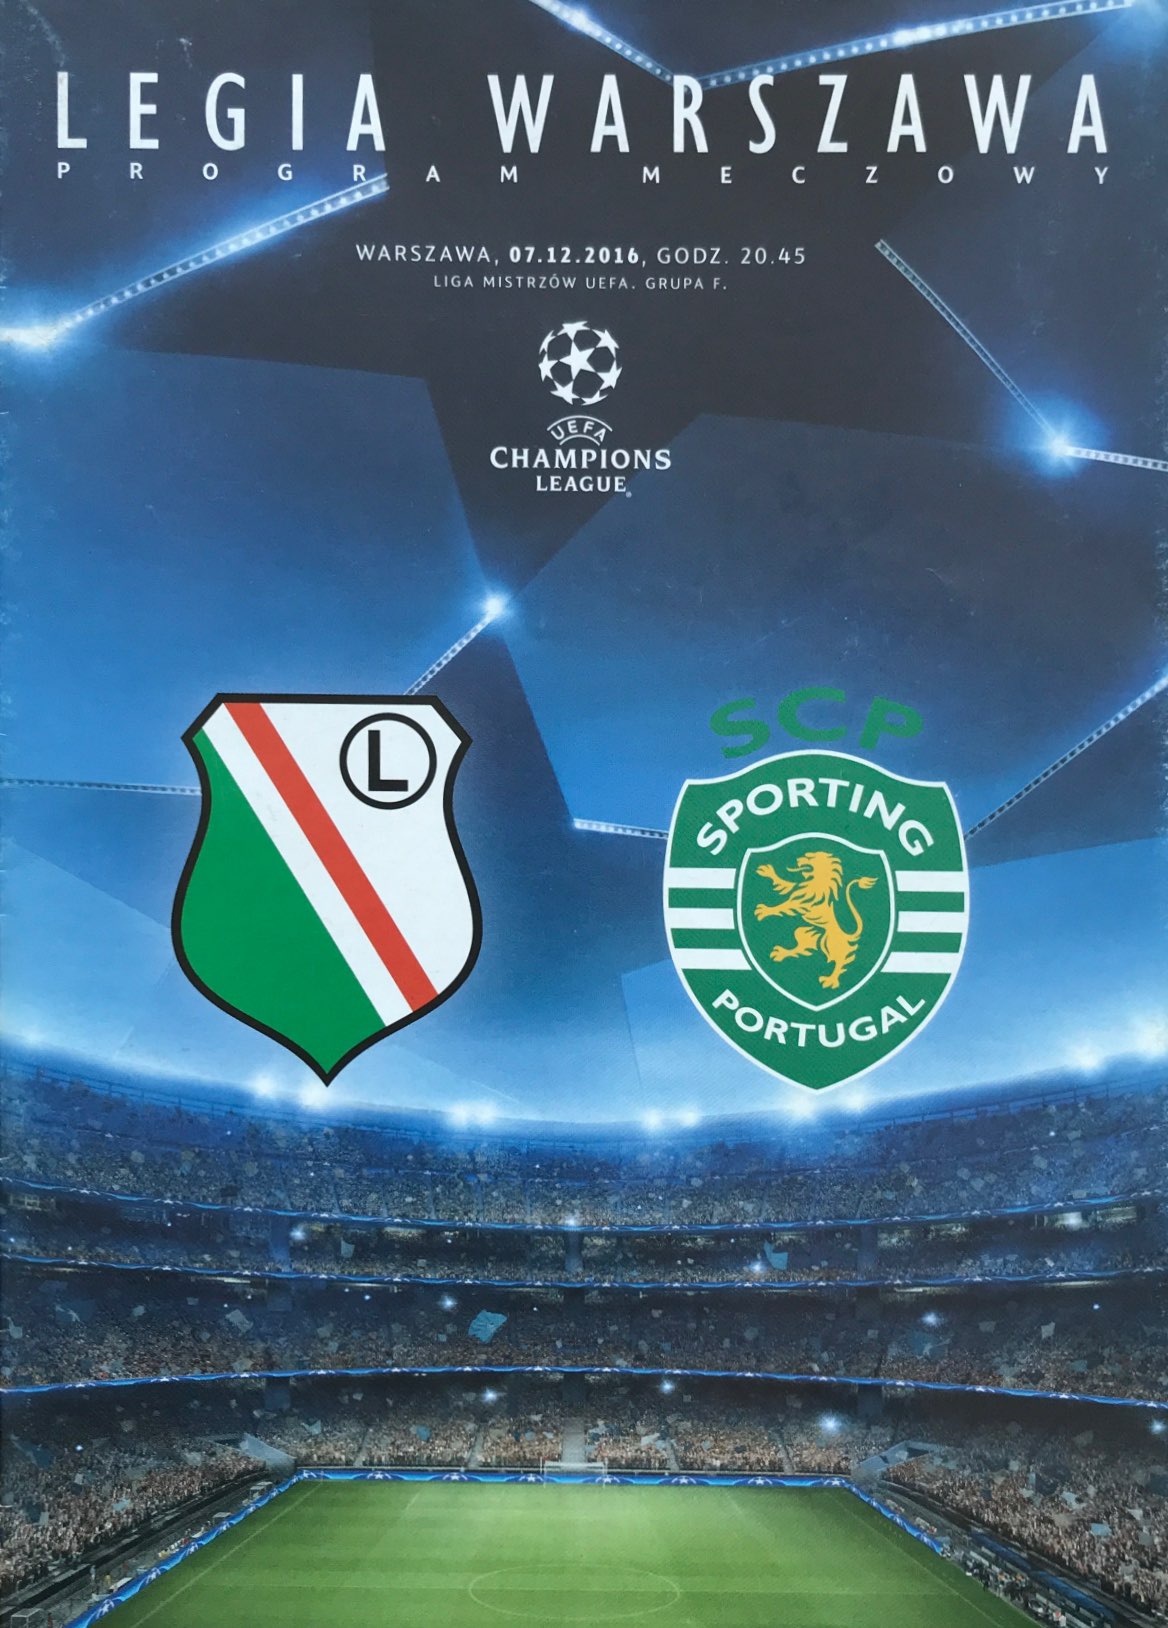 Program meczowy Legia Warszawa - Sporting Lizbona 1:0 (07.12.2016).